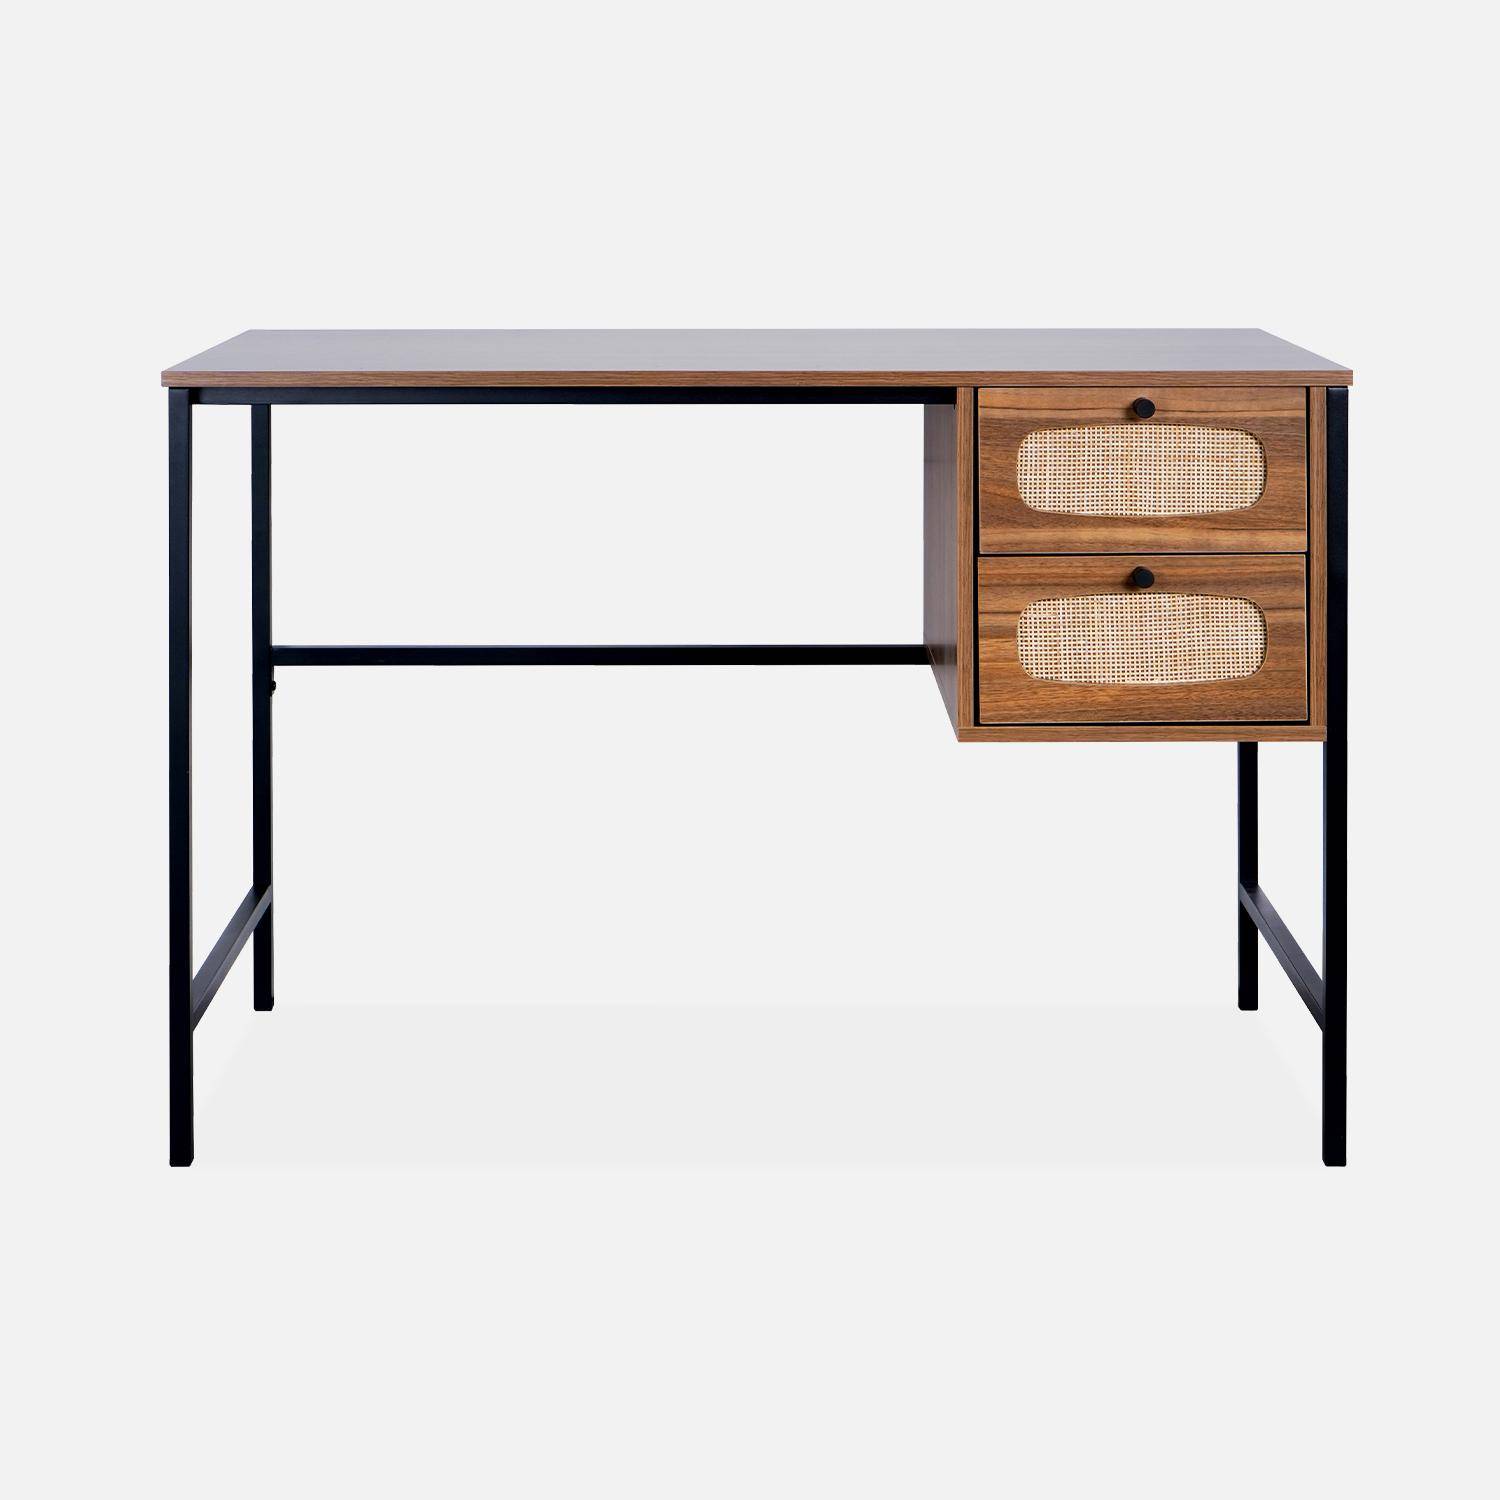 Retro bureau met hout- en rieteffect, zwarte metalen poten en handgrepen Photo4